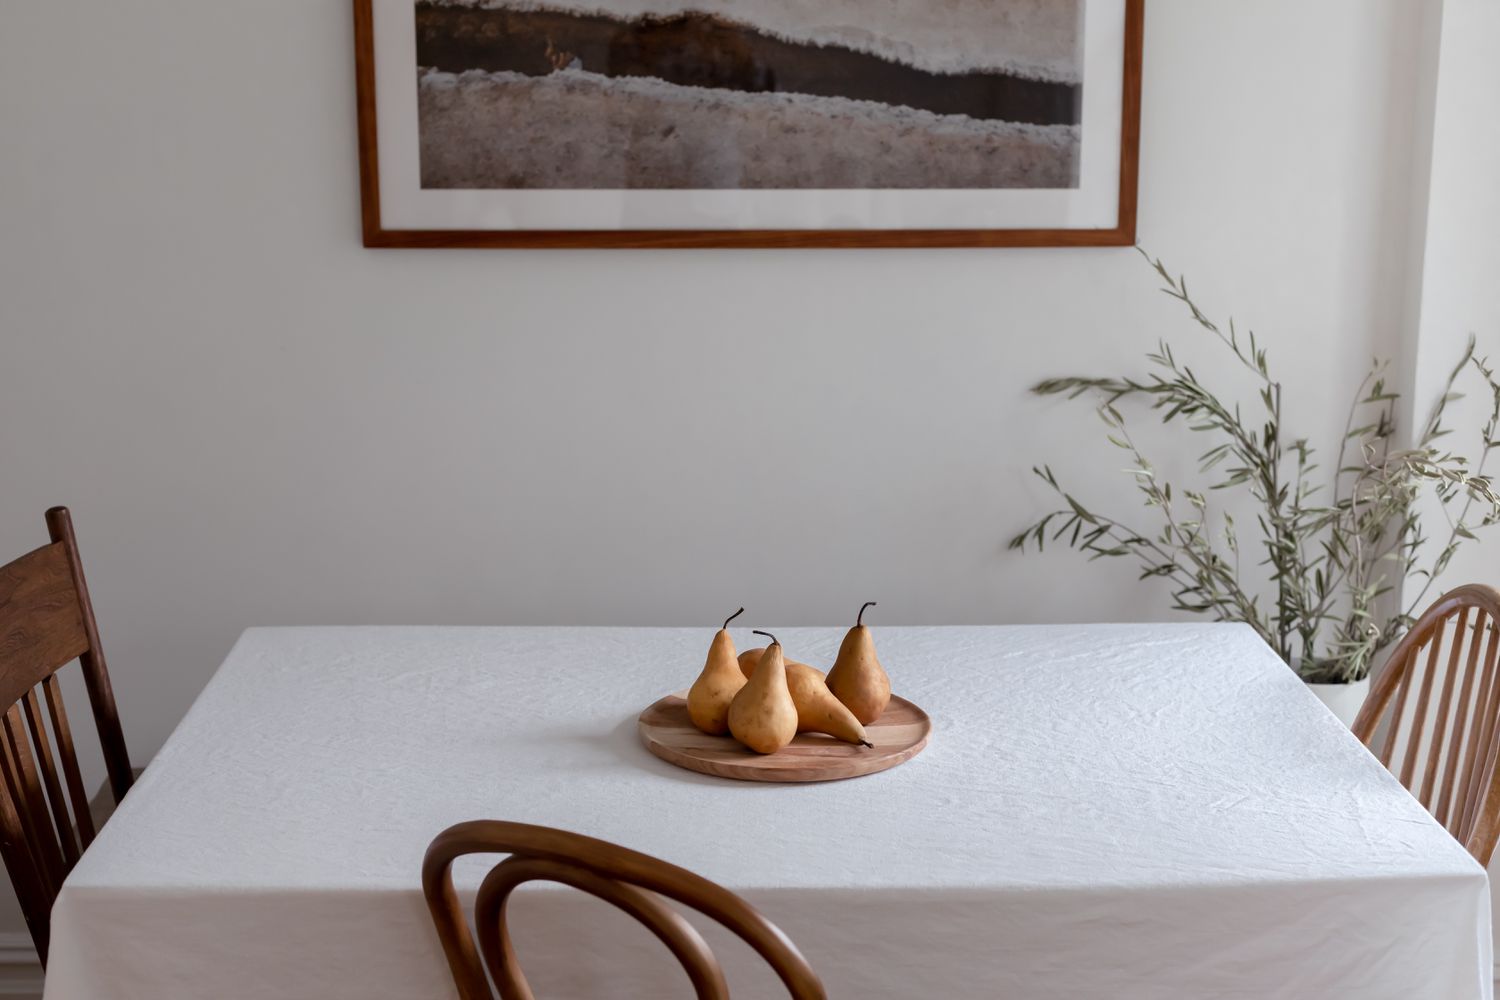 Mesa de comedor con mantel blanco y fuente de madera con peras junto a sillas de madera